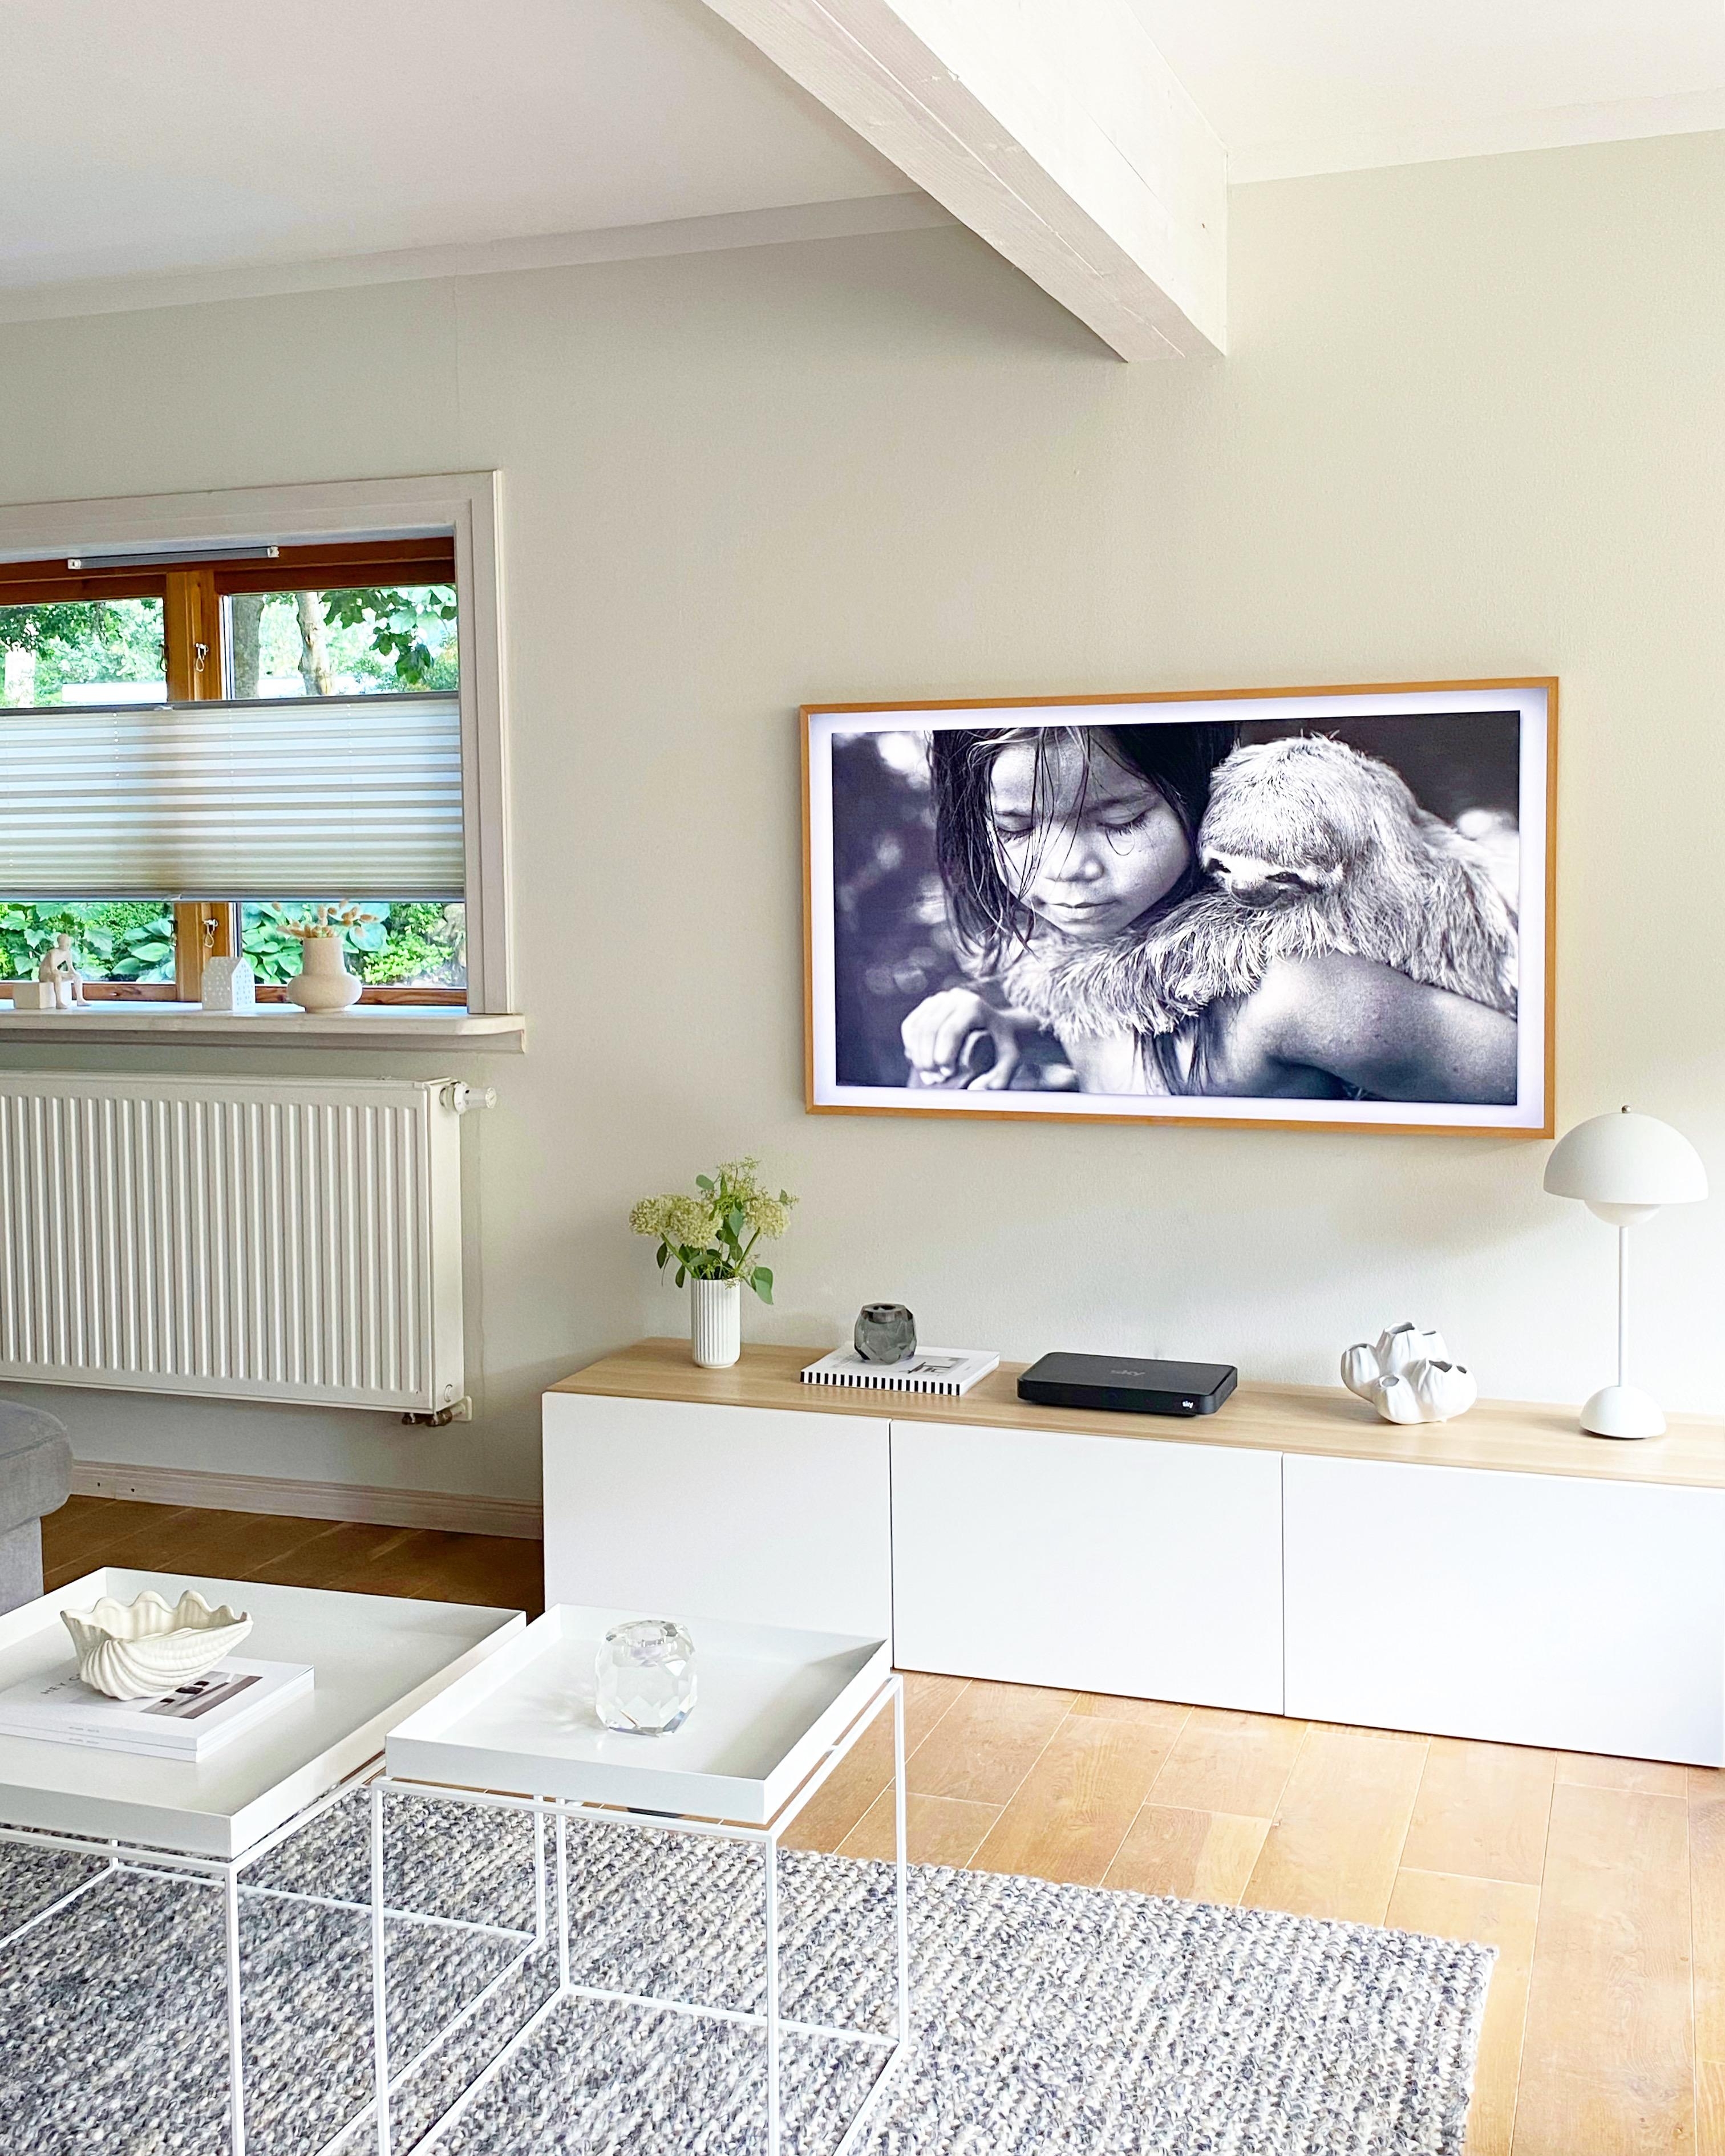 #wohnzimmer #tvboard #fernseher #couchtisch #blumendeko #holzhausromantik